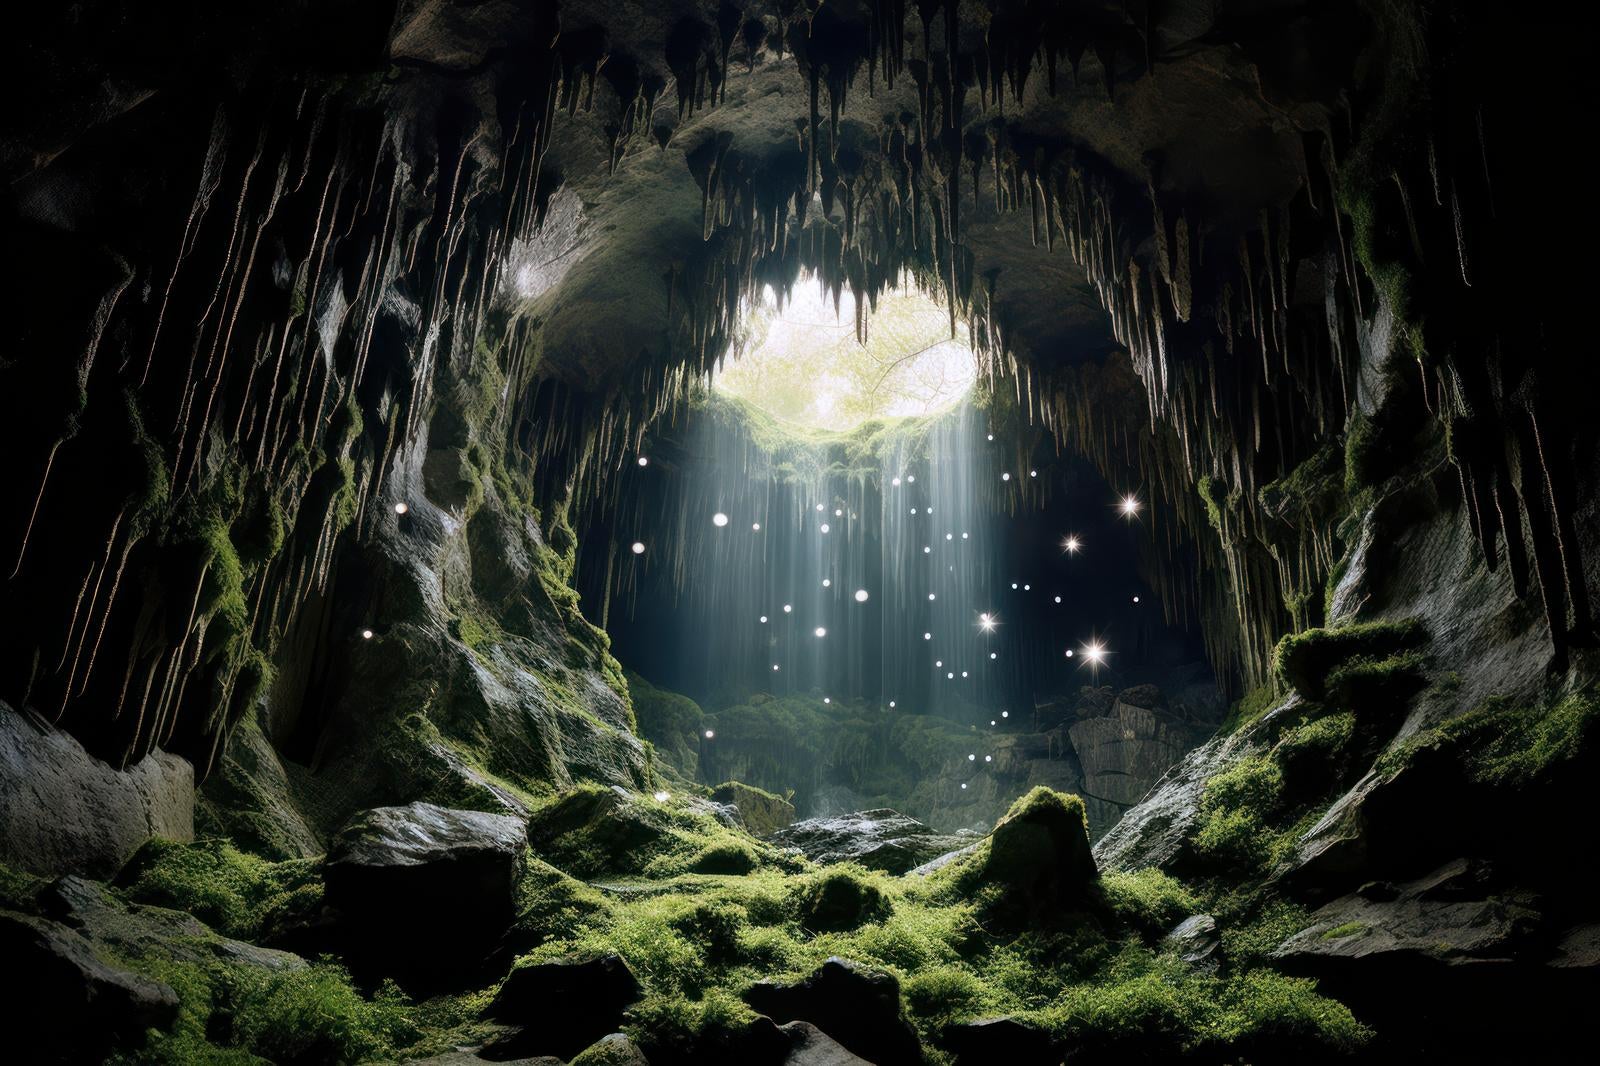 「洞窟の光芒 天使の梯子と地下世界」の写真